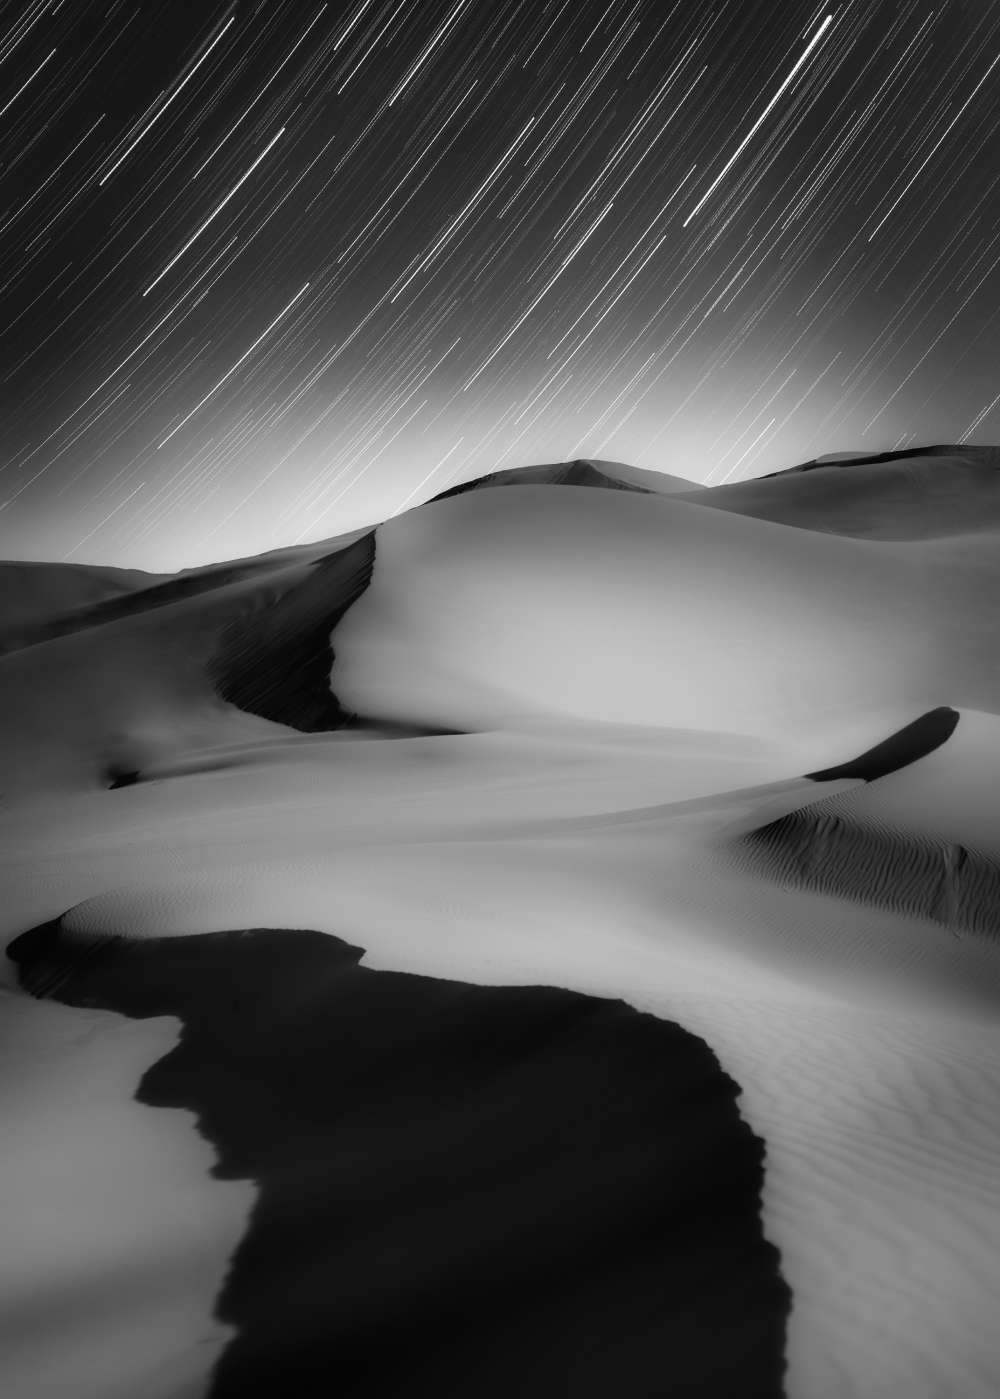 Bức ảnh 'Nhừng chùm sao và sa mạc' của nhiếp ảnh gia Shuchang Dong (Trung Quốc) đã bất ngờ giành giải thưởng 'Sir Patrick Moore' - Giải thưởng đặc biệt của BTC dành cho người xuất sắc nhất mới gia nhập môn nghệ thuật nhiếp ảnh thiên văn.